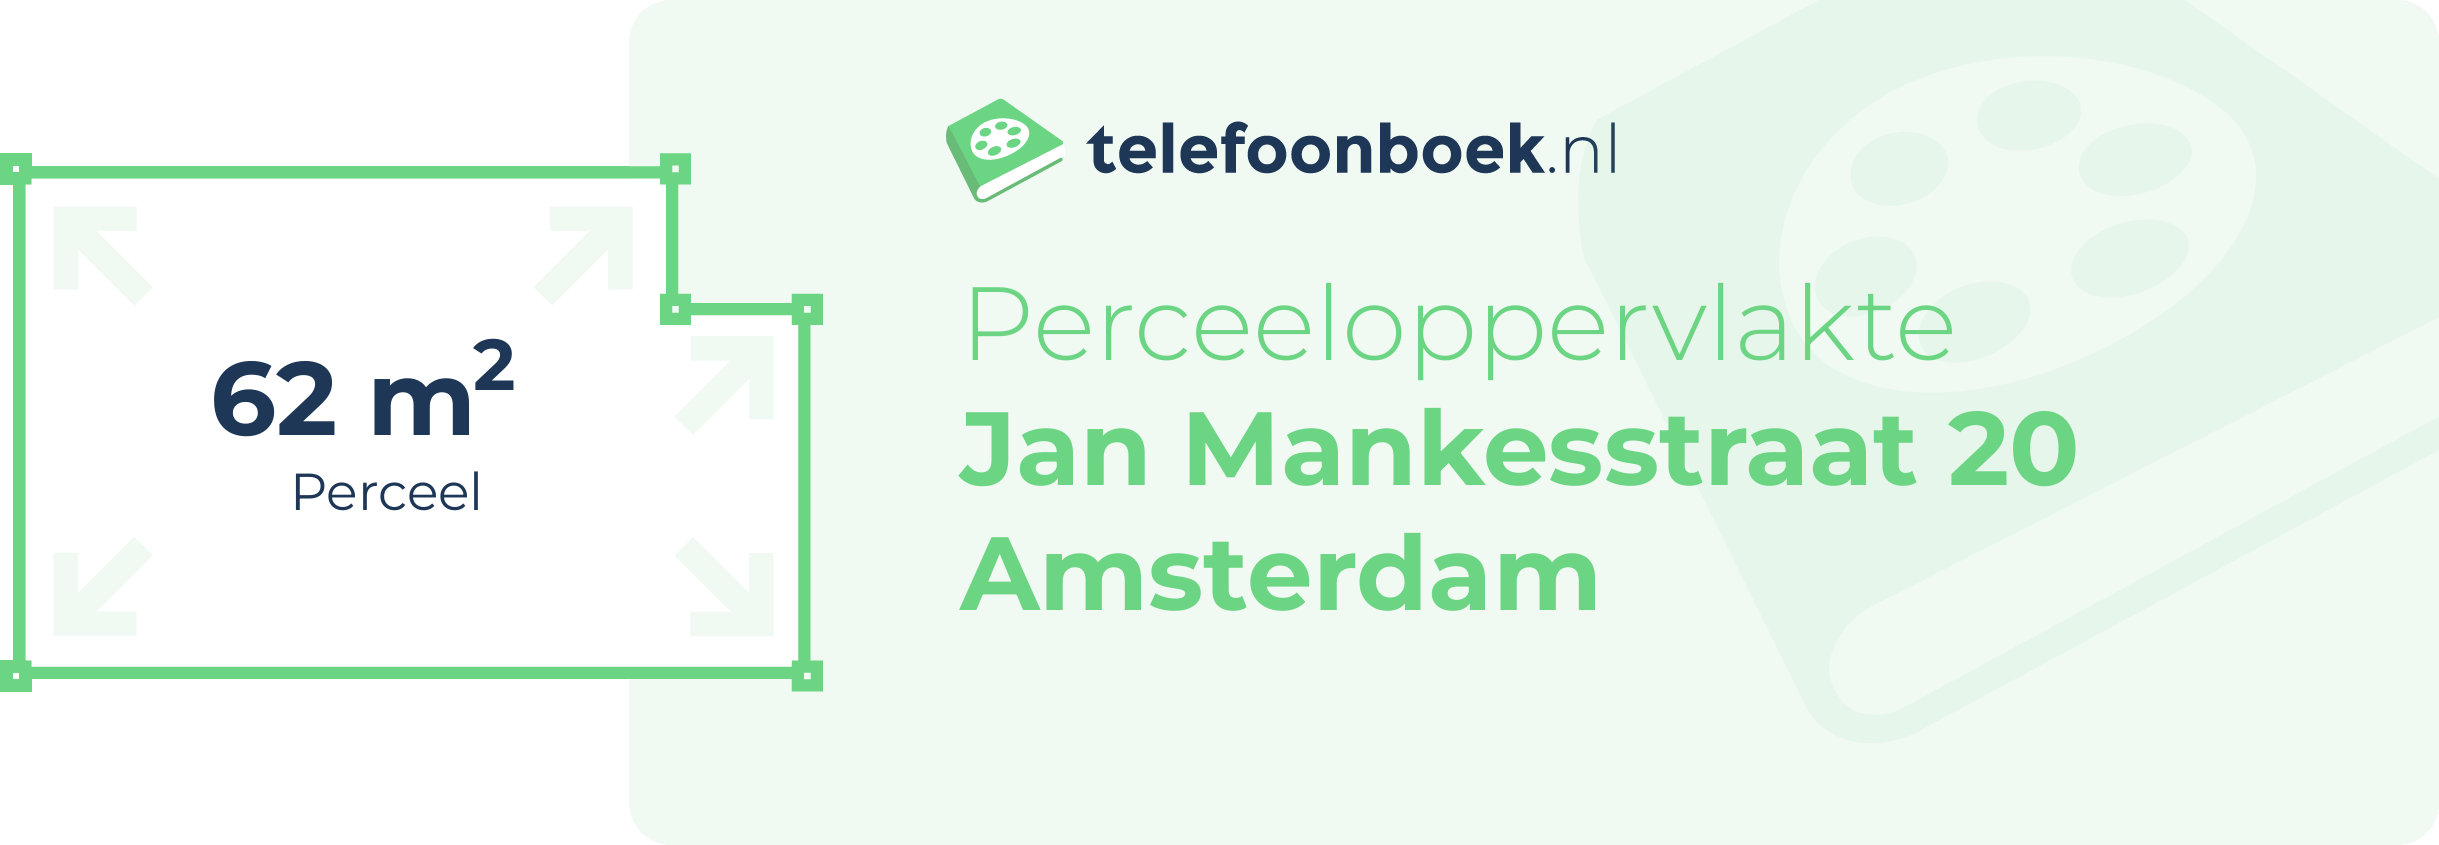 Perceeloppervlakte Jan Mankesstraat 20 Amsterdam